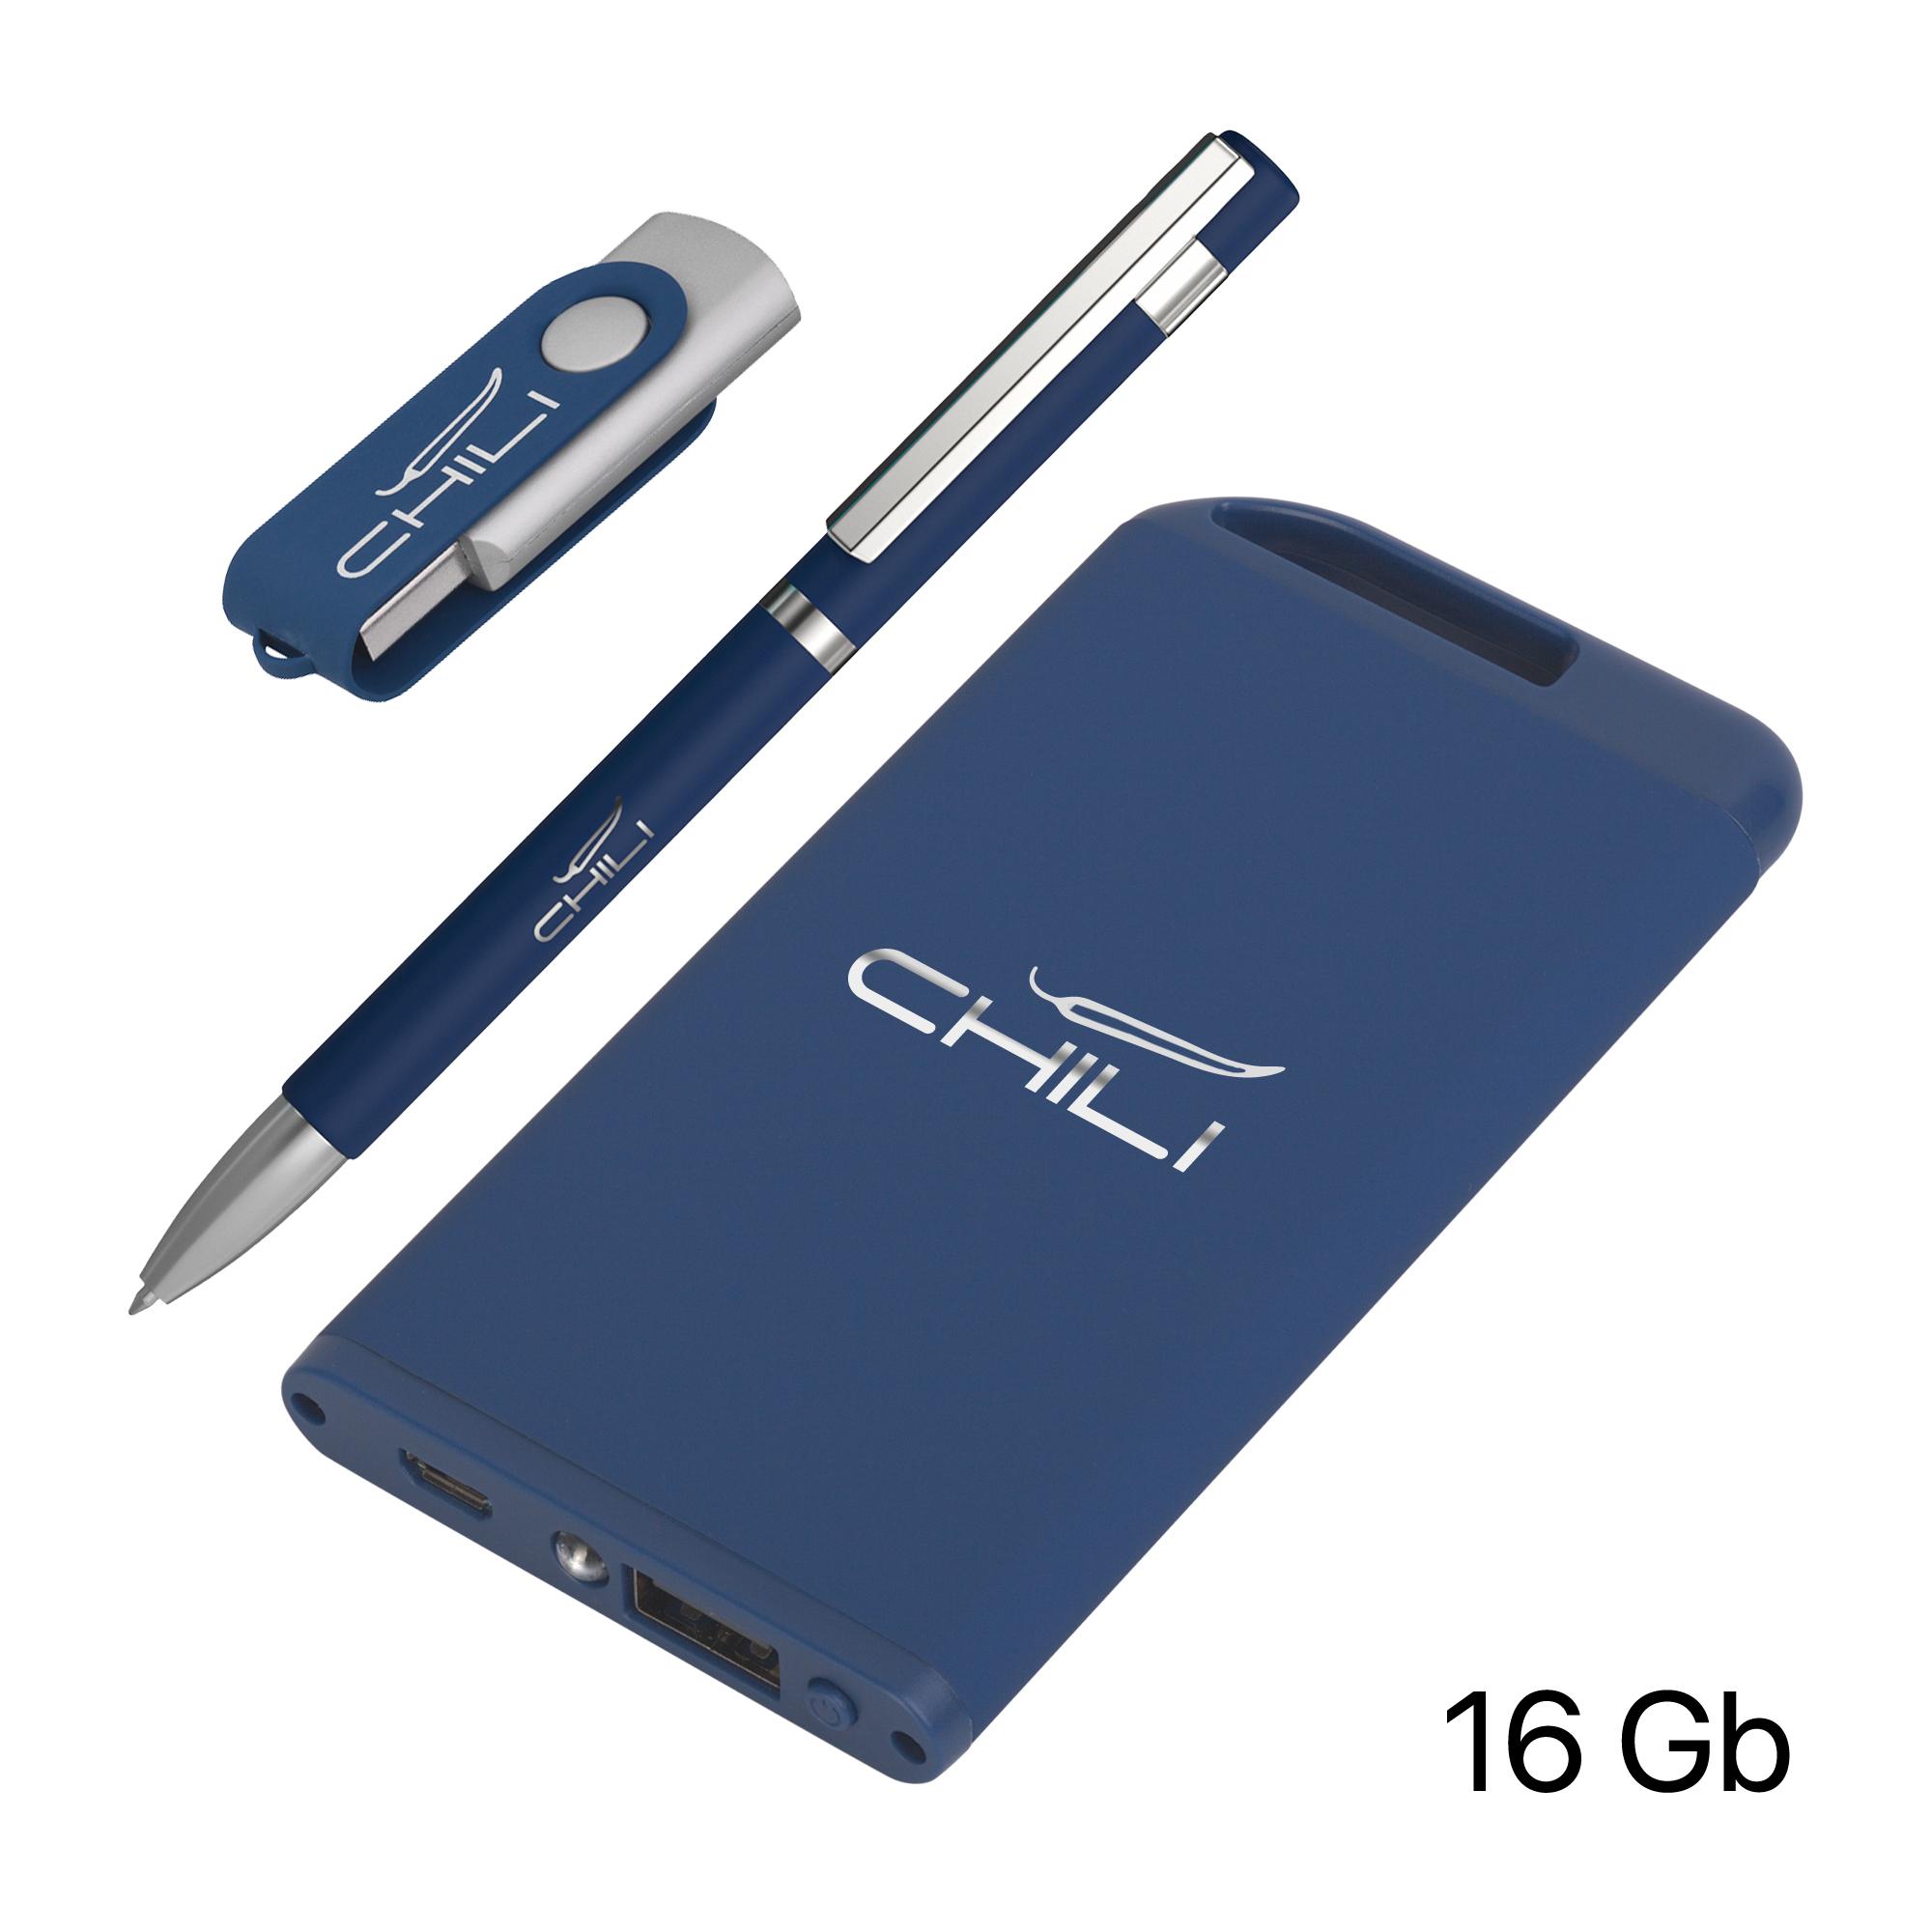 Набор ручка + флеш-карта 16Гб + зарядное устройство 4000 mAh в футляре, soft touch, цвет темно-синий, фото 1